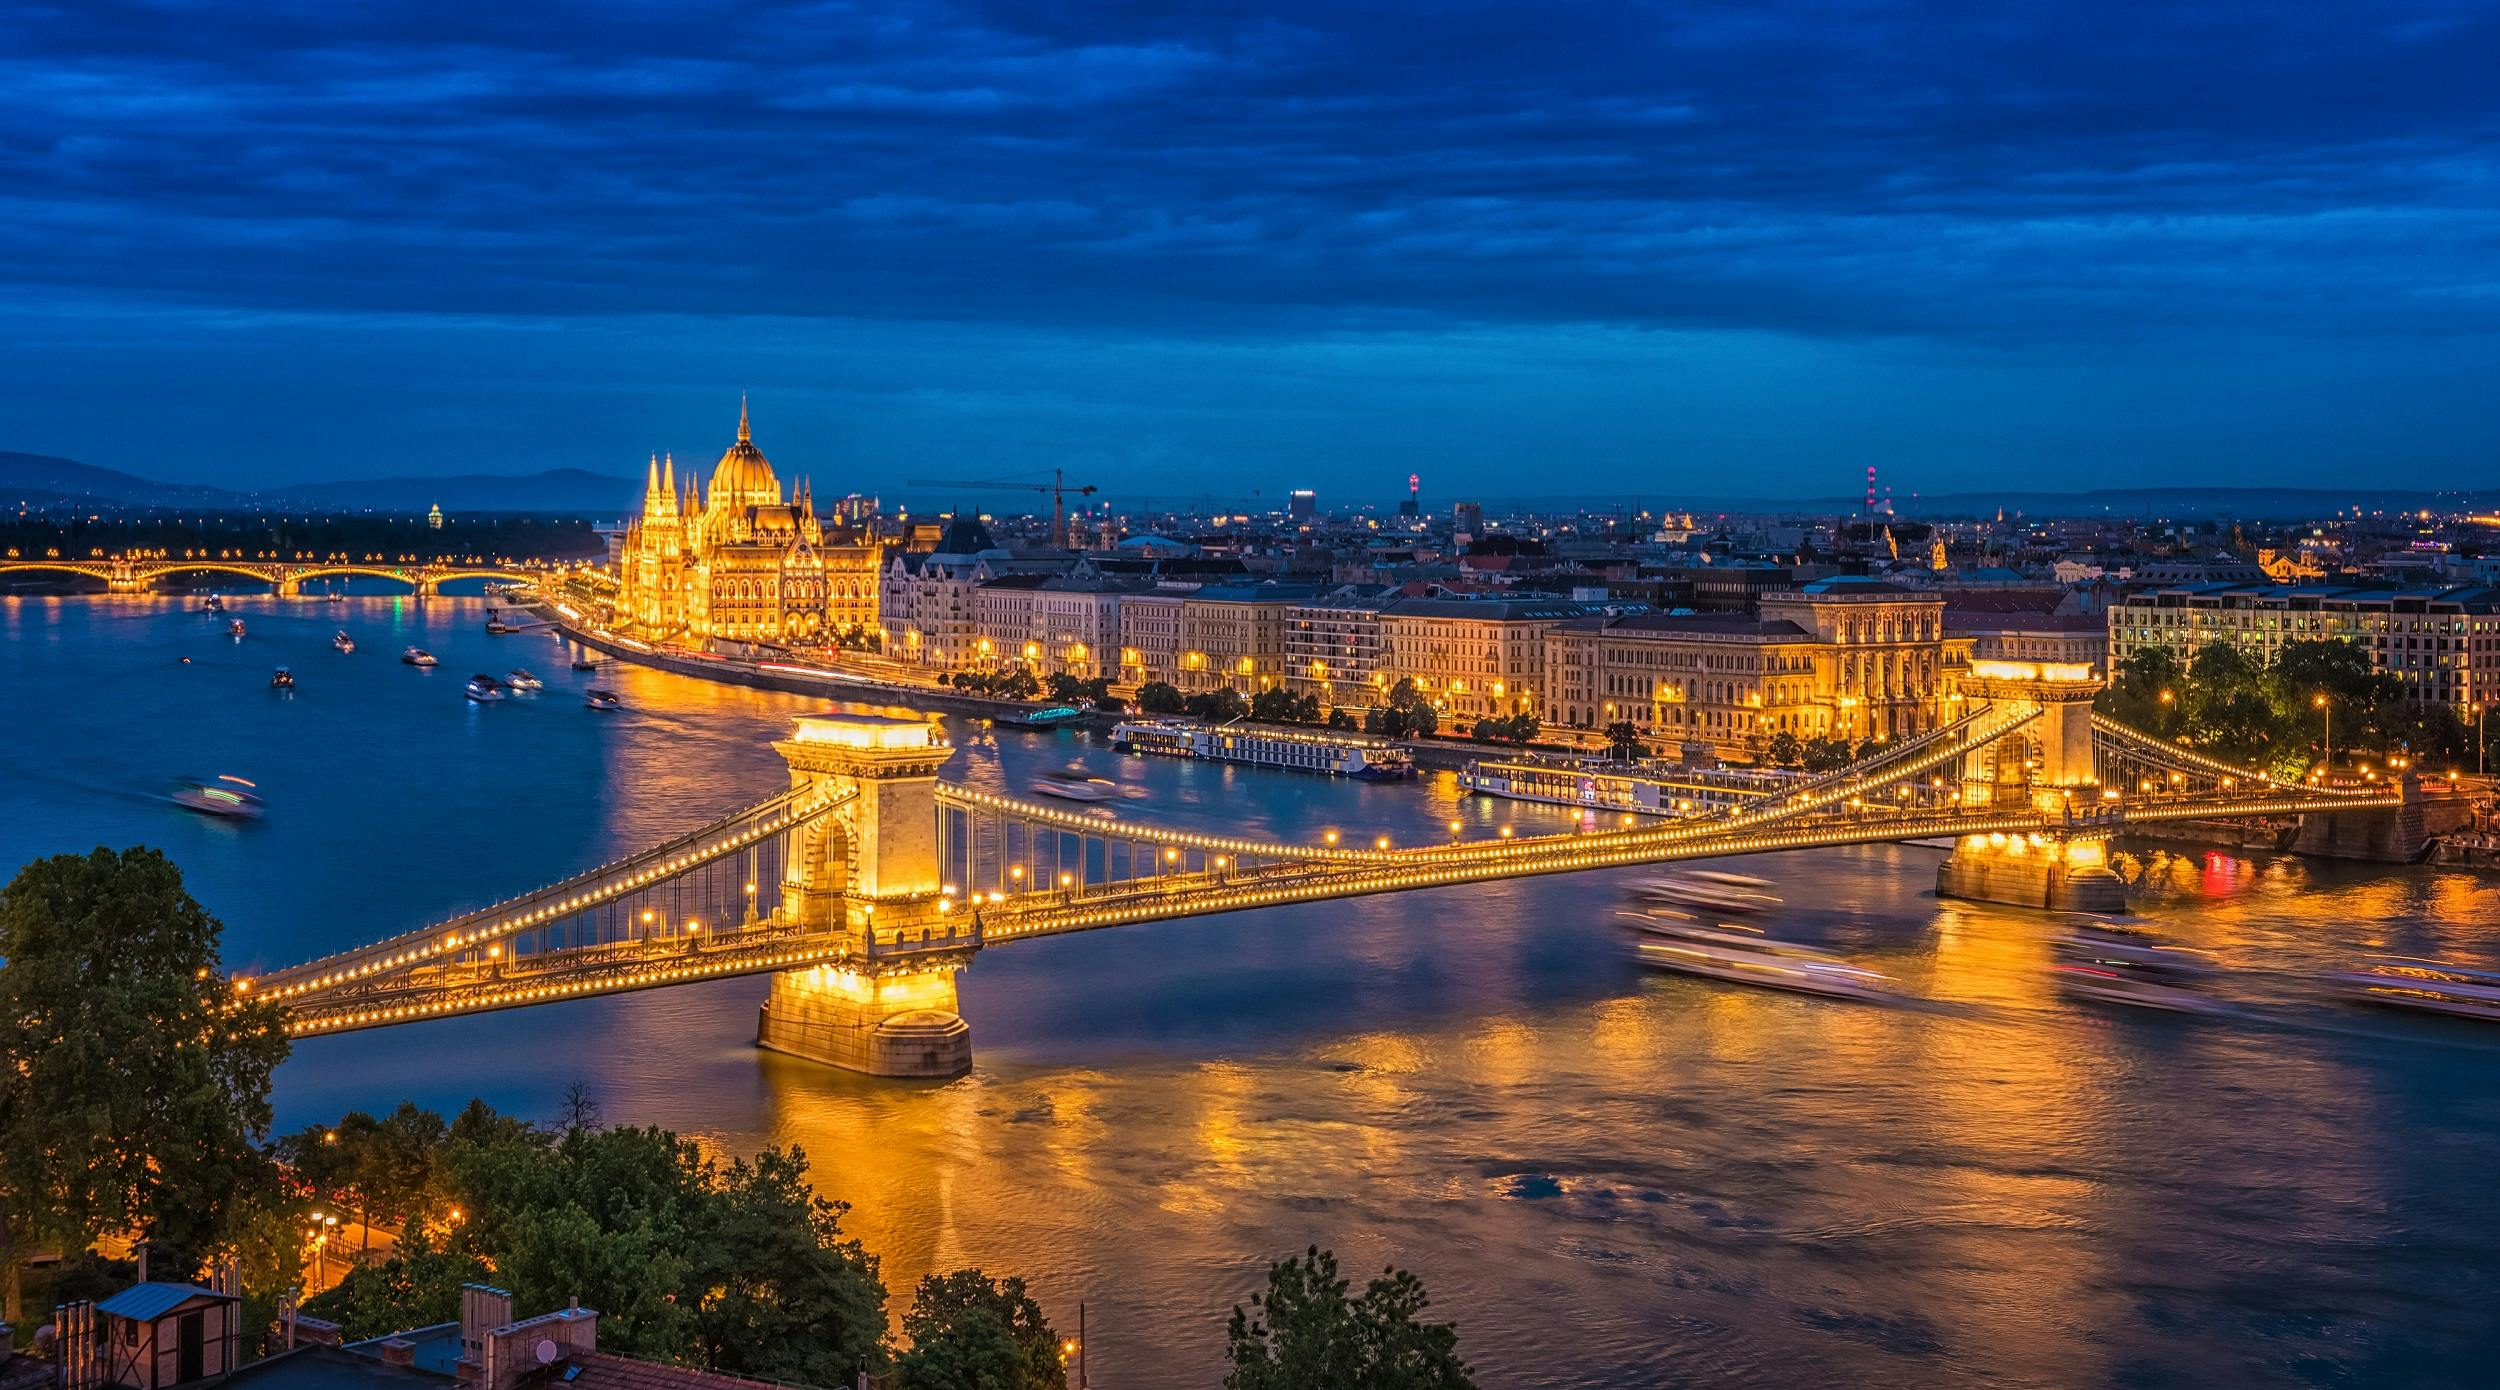 Panorama-Tour zu romantischen Aussichtspunkten in Budapest